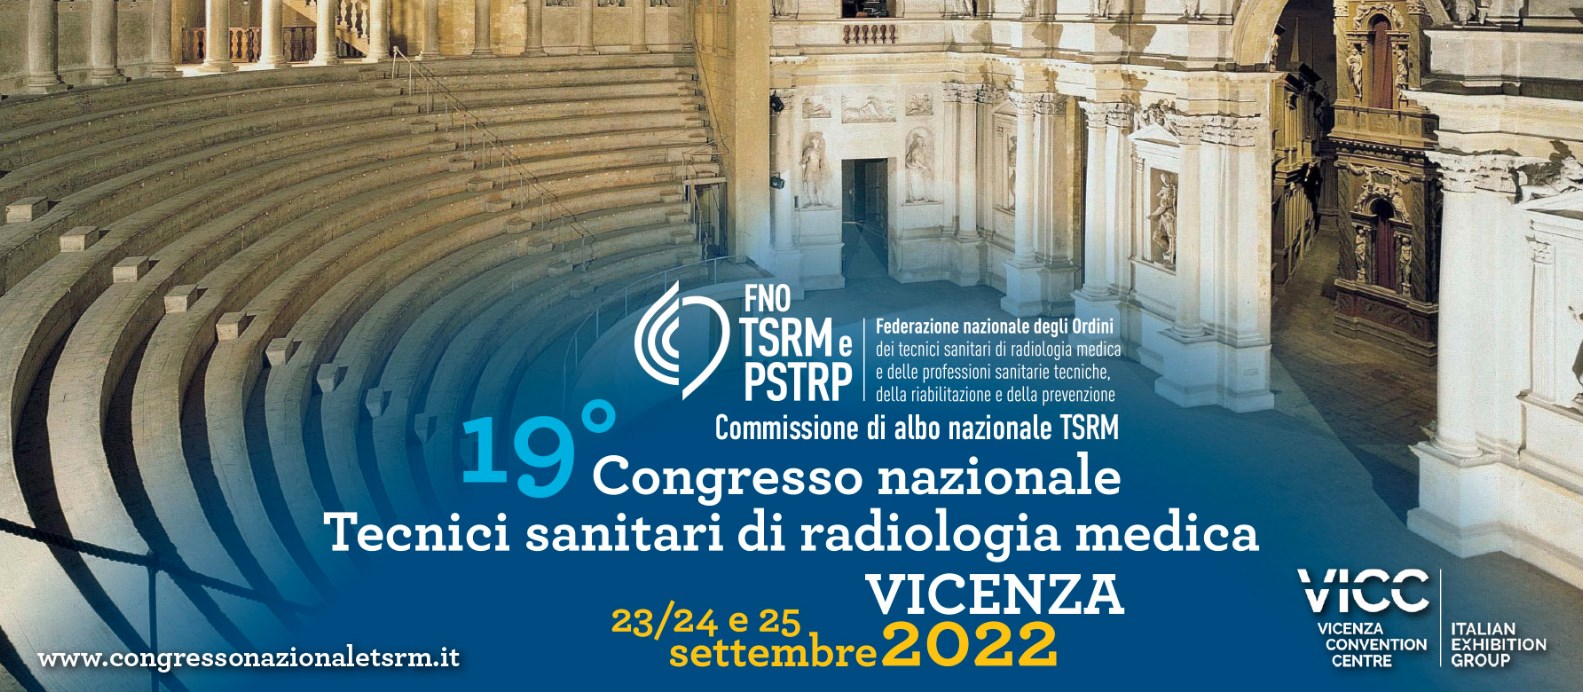 XIX Congresso nazionale TSRM - Vicenza Convention Centre